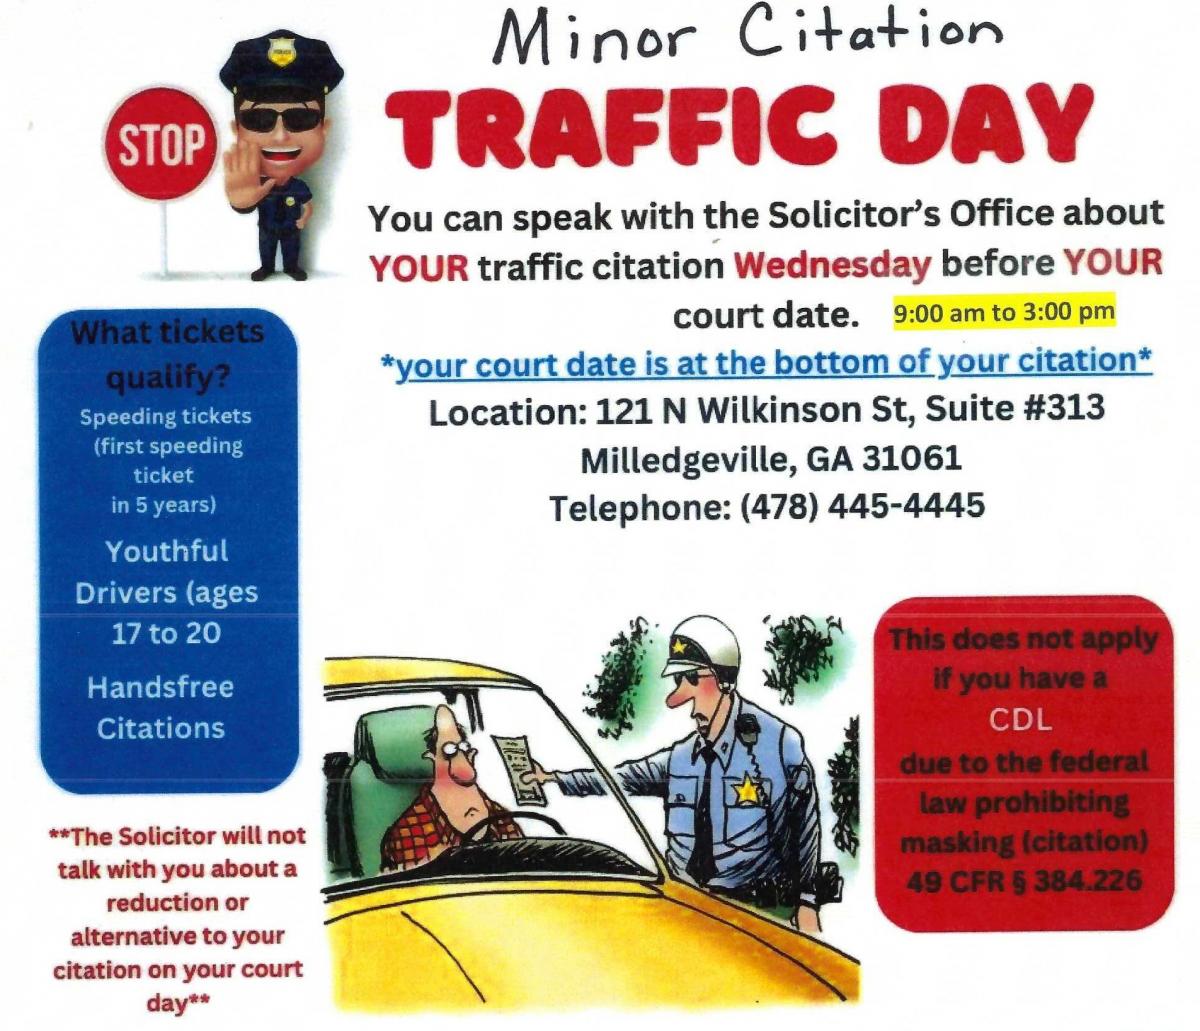 Minor Citation Traffic Day Flyer